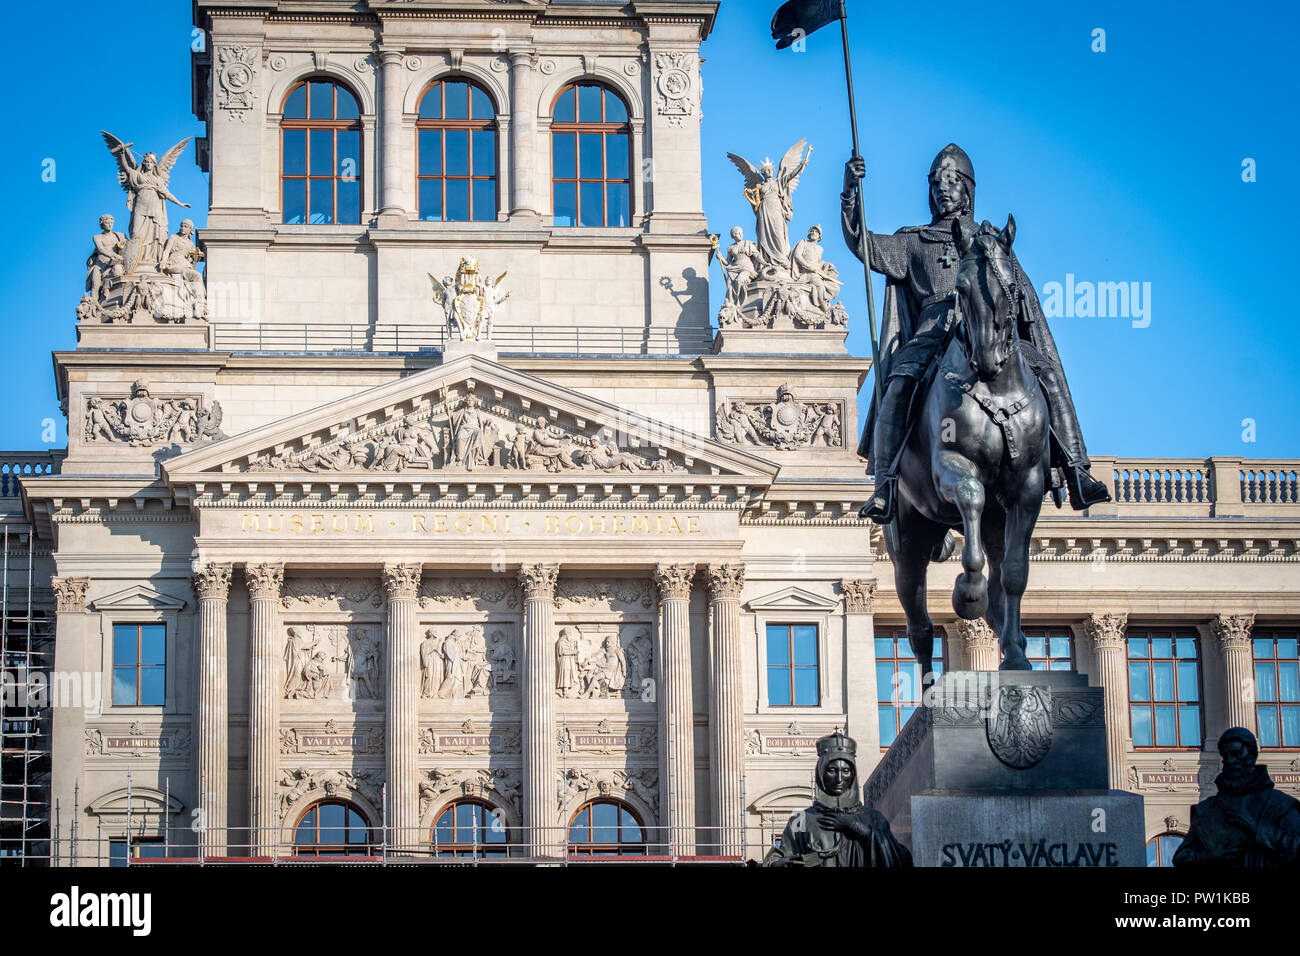 Der Blick auf die Skulptur eines Kriegers, triumphierend auf einem Pferd in Prag - Tschechische Republik Stockfoto